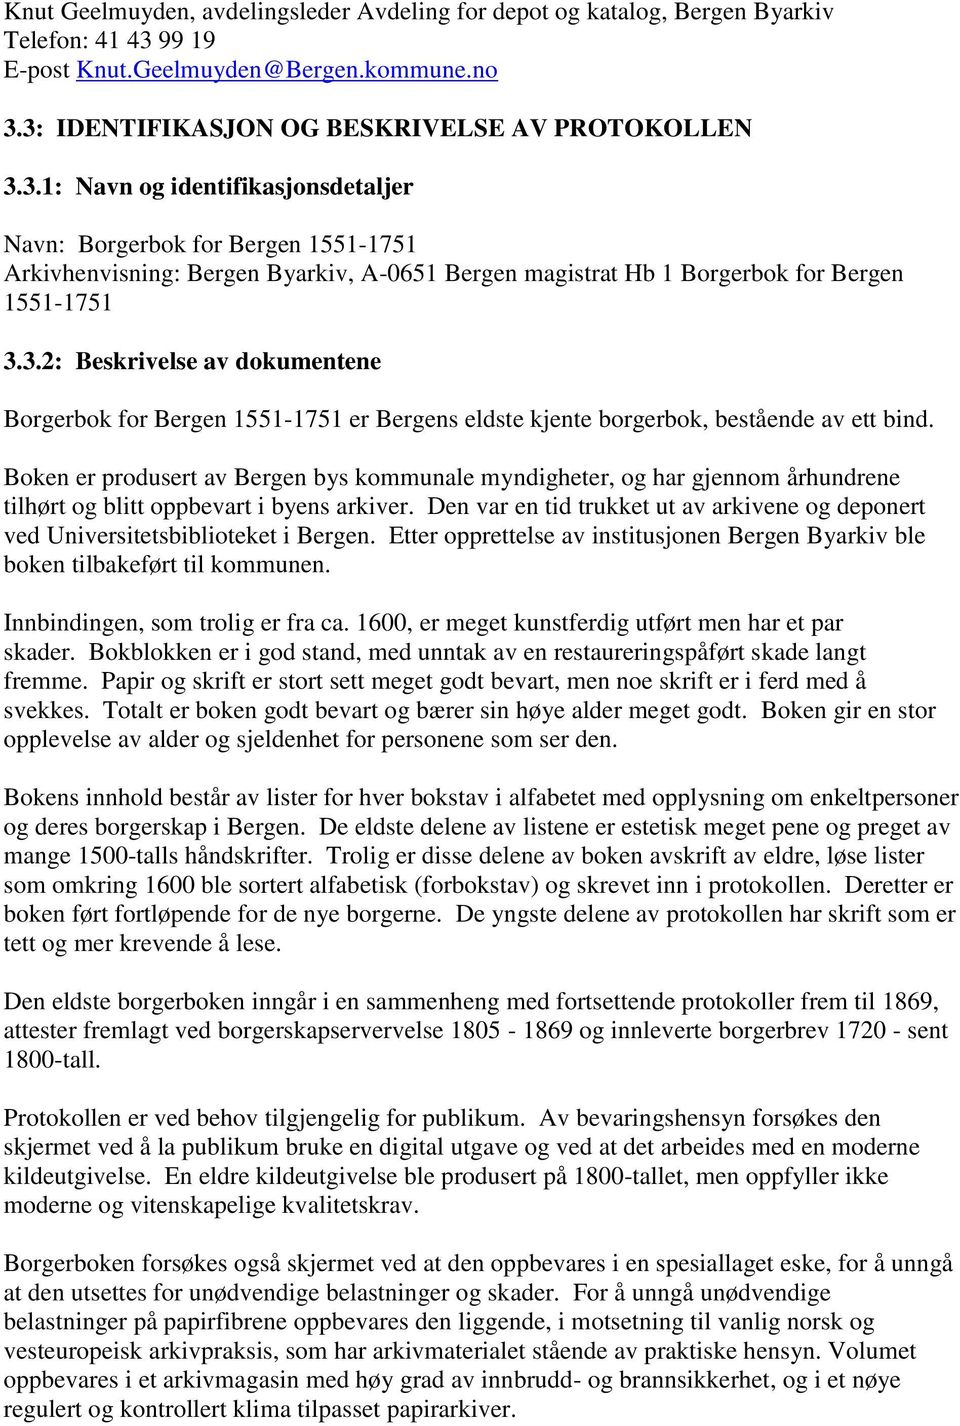 3: IDENTIFIKASJON OG BESKRIVELSE AV PROTOKOLLEN 3.3.1: Navn og identifikasjonsdetaljer Navn: Borgerbok for Bergen 1551-1751 Arkivhenvisning: Bergen Byarkiv, A-0651 Bergen magistrat Hb 1 Borgerbok for Bergen 1551-1751 3.